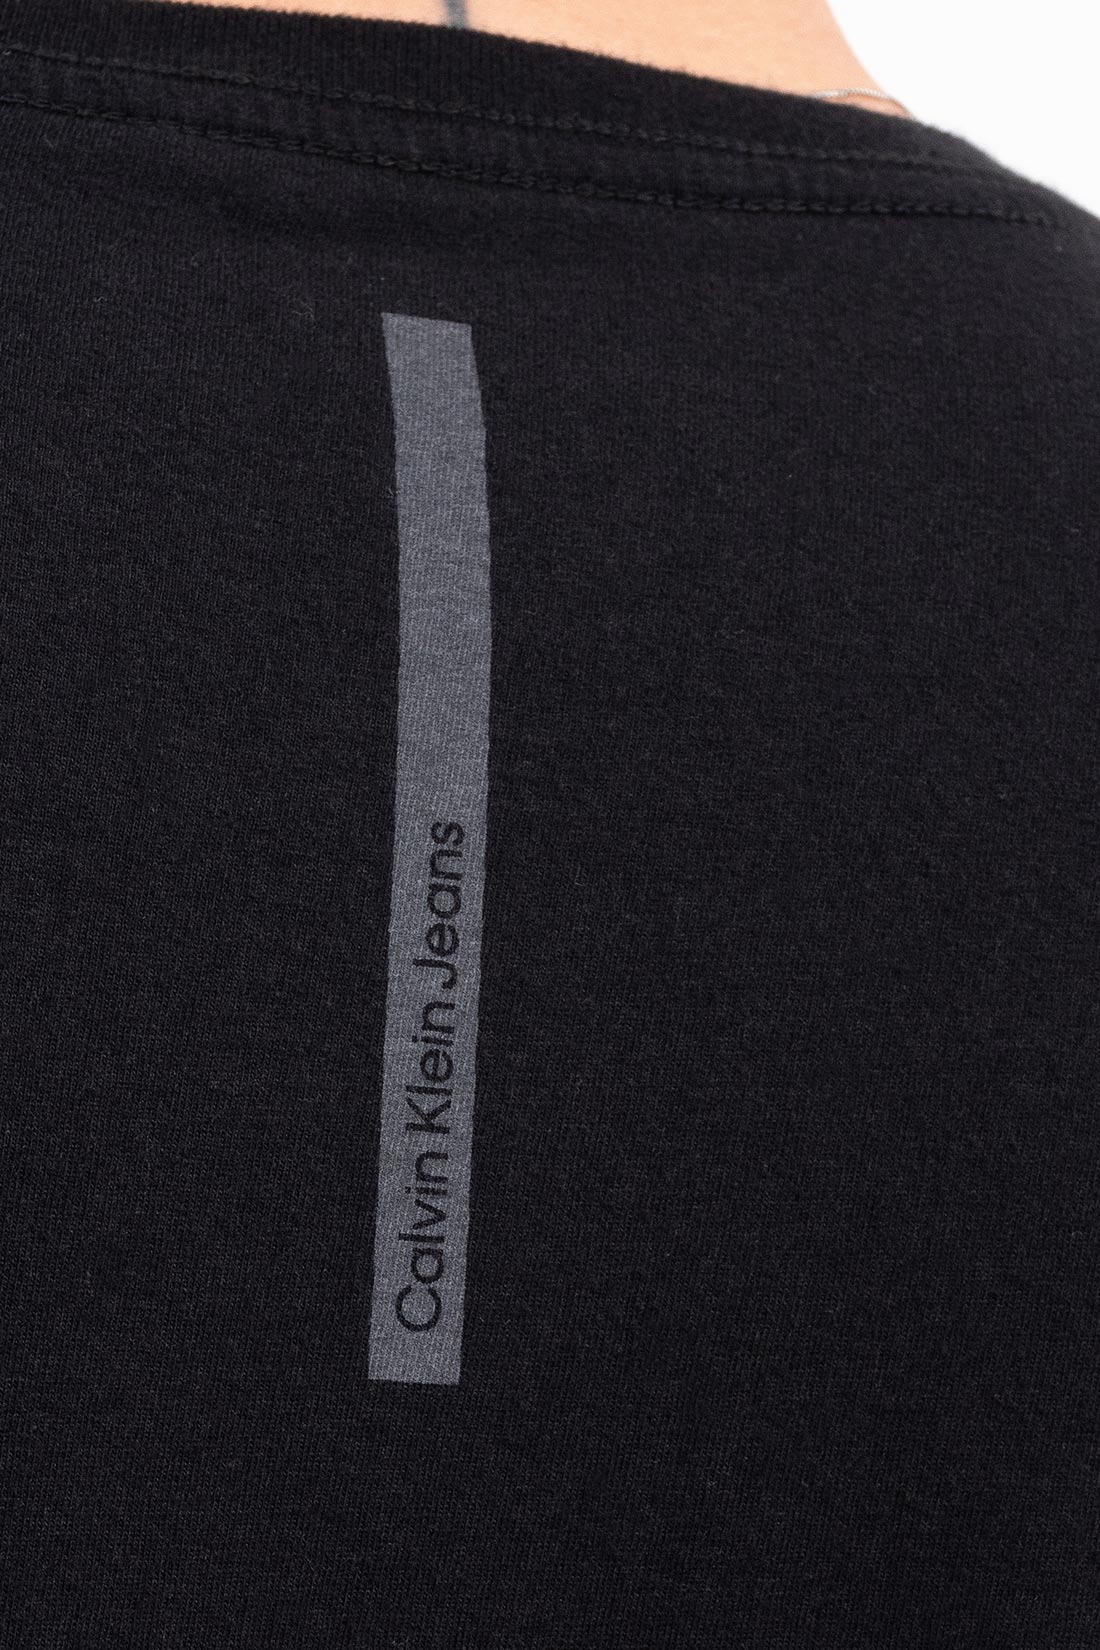 Camiseta Mc Calvin Klein Logo Basico Frente